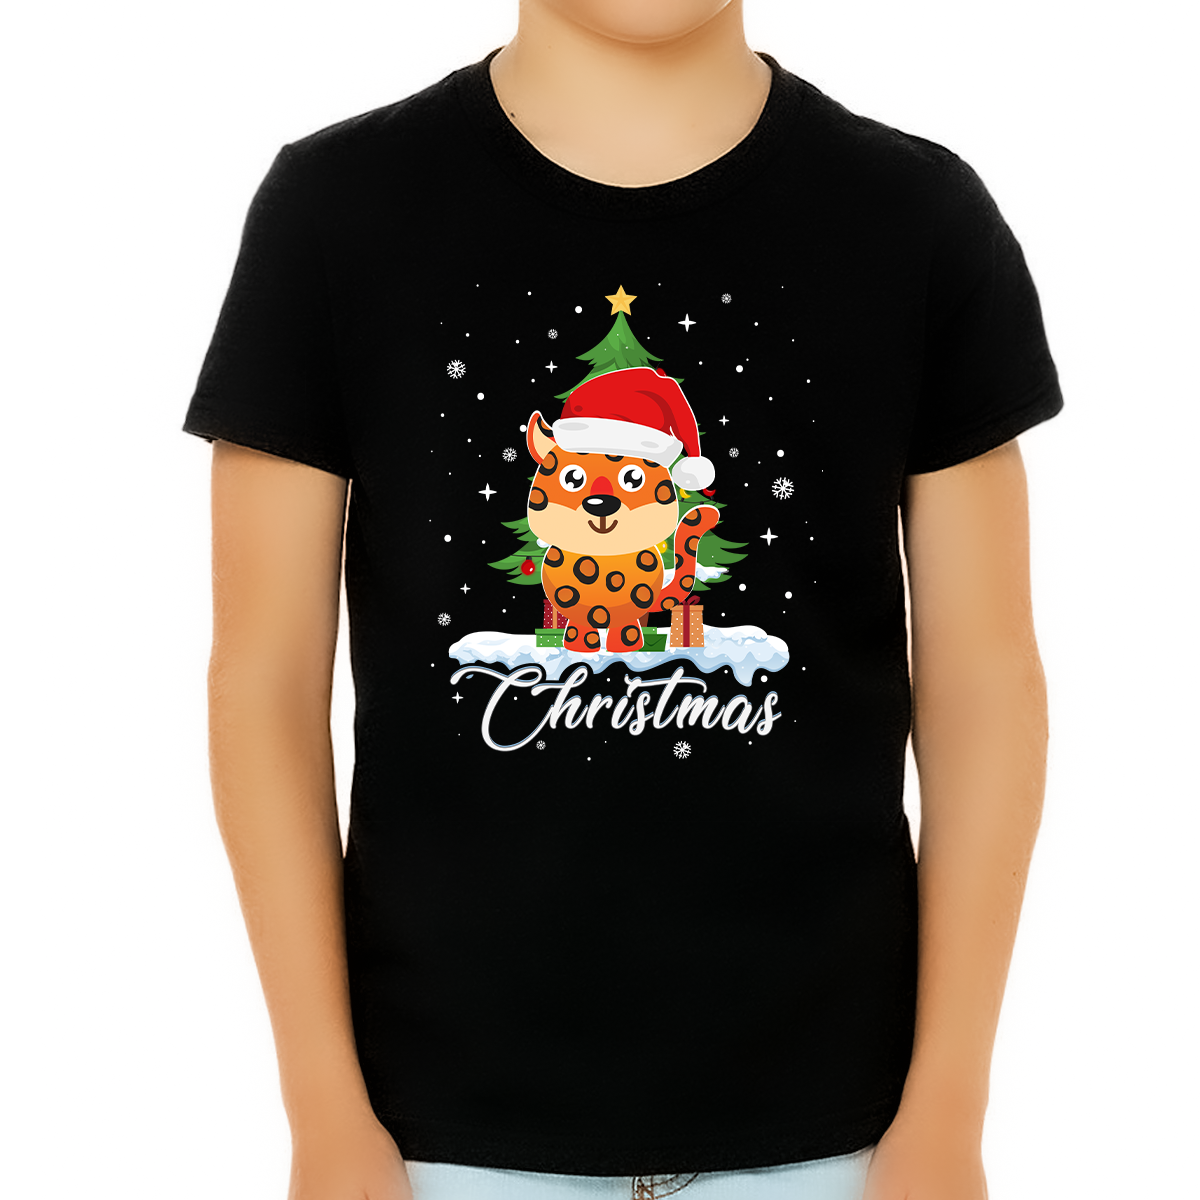 Boys Christmas Shirt Cute Leopard Christmas Shirts for Boys Cute Christmas Shirts for Kids